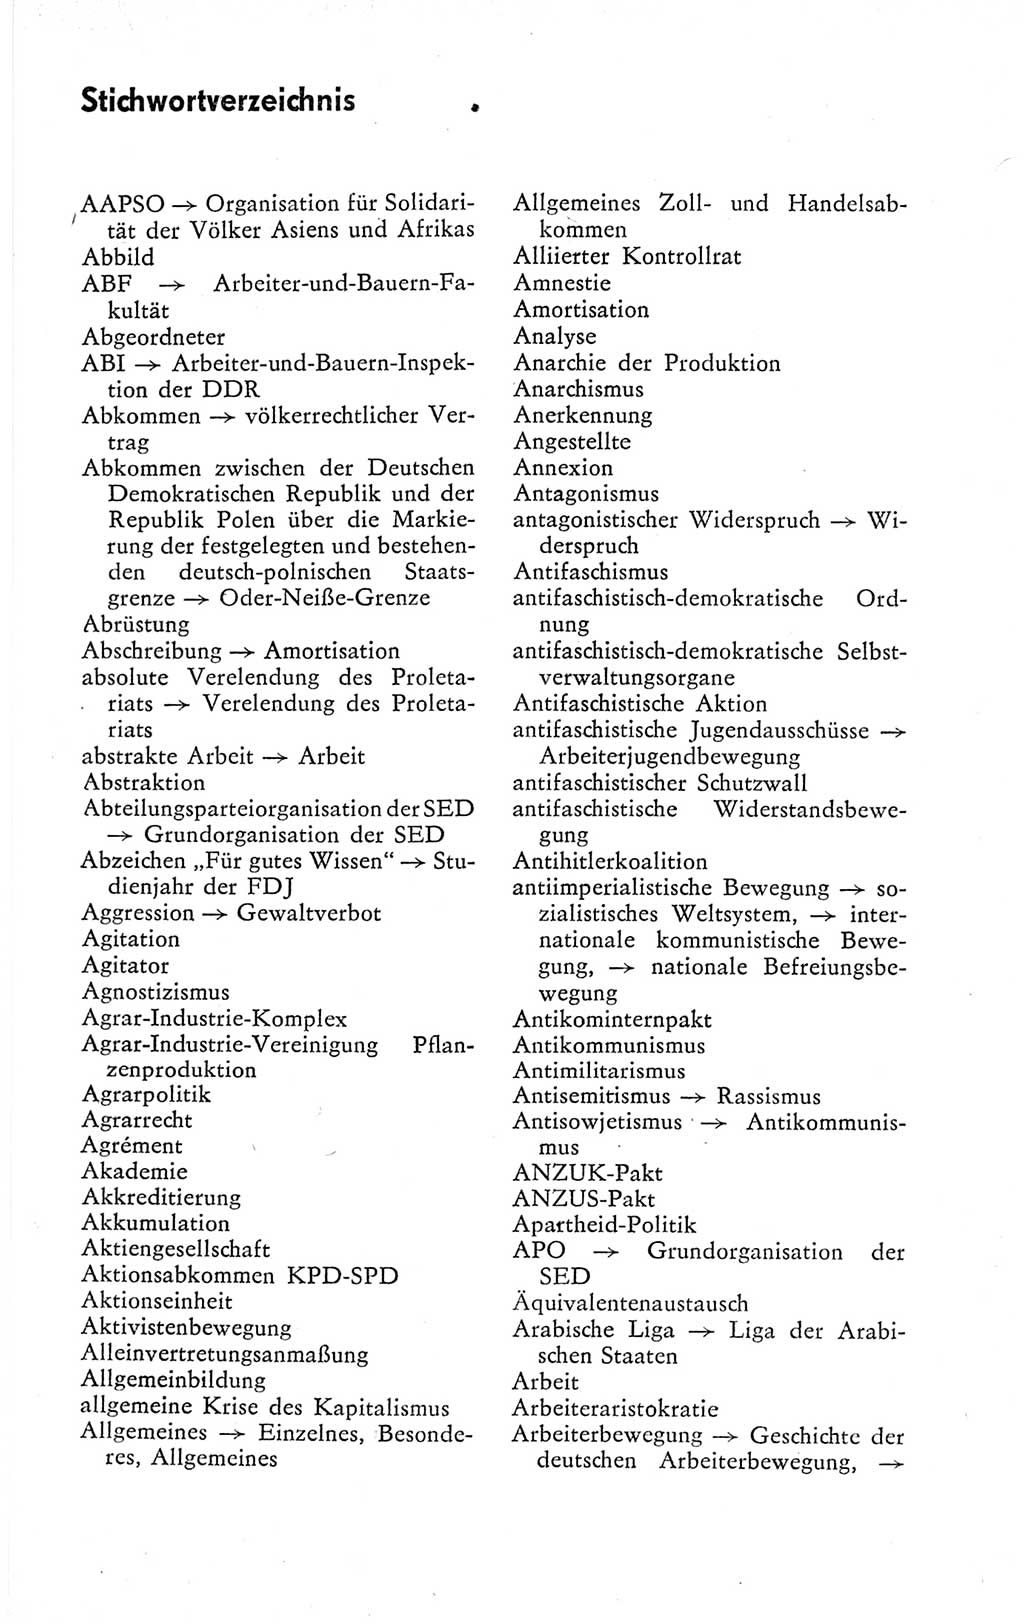 Kleines politisches Wörterbuch [Deutsche Demokratische Republik (DDR)] 1978, Seite 1055 (Kl. pol. Wb. DDR 1978, S. 1055)